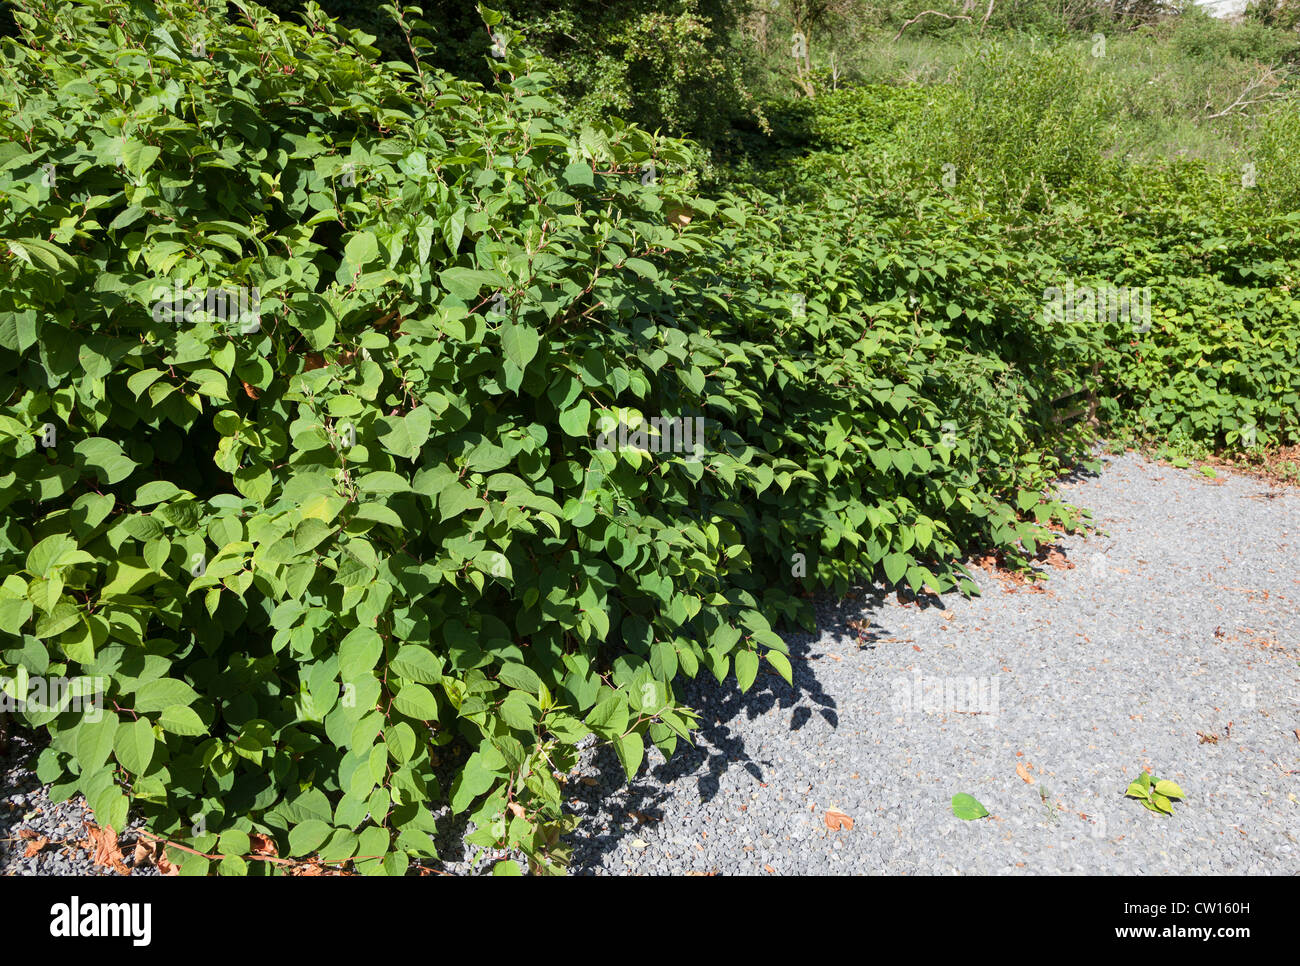 La renouée japonaise, Fallopia japonica, syn. Polygonum cuspidatum, Reynoutria japonica, au bord du chemin, Samatan, Pays de Galles, Royaume-Uni Banque D'Images